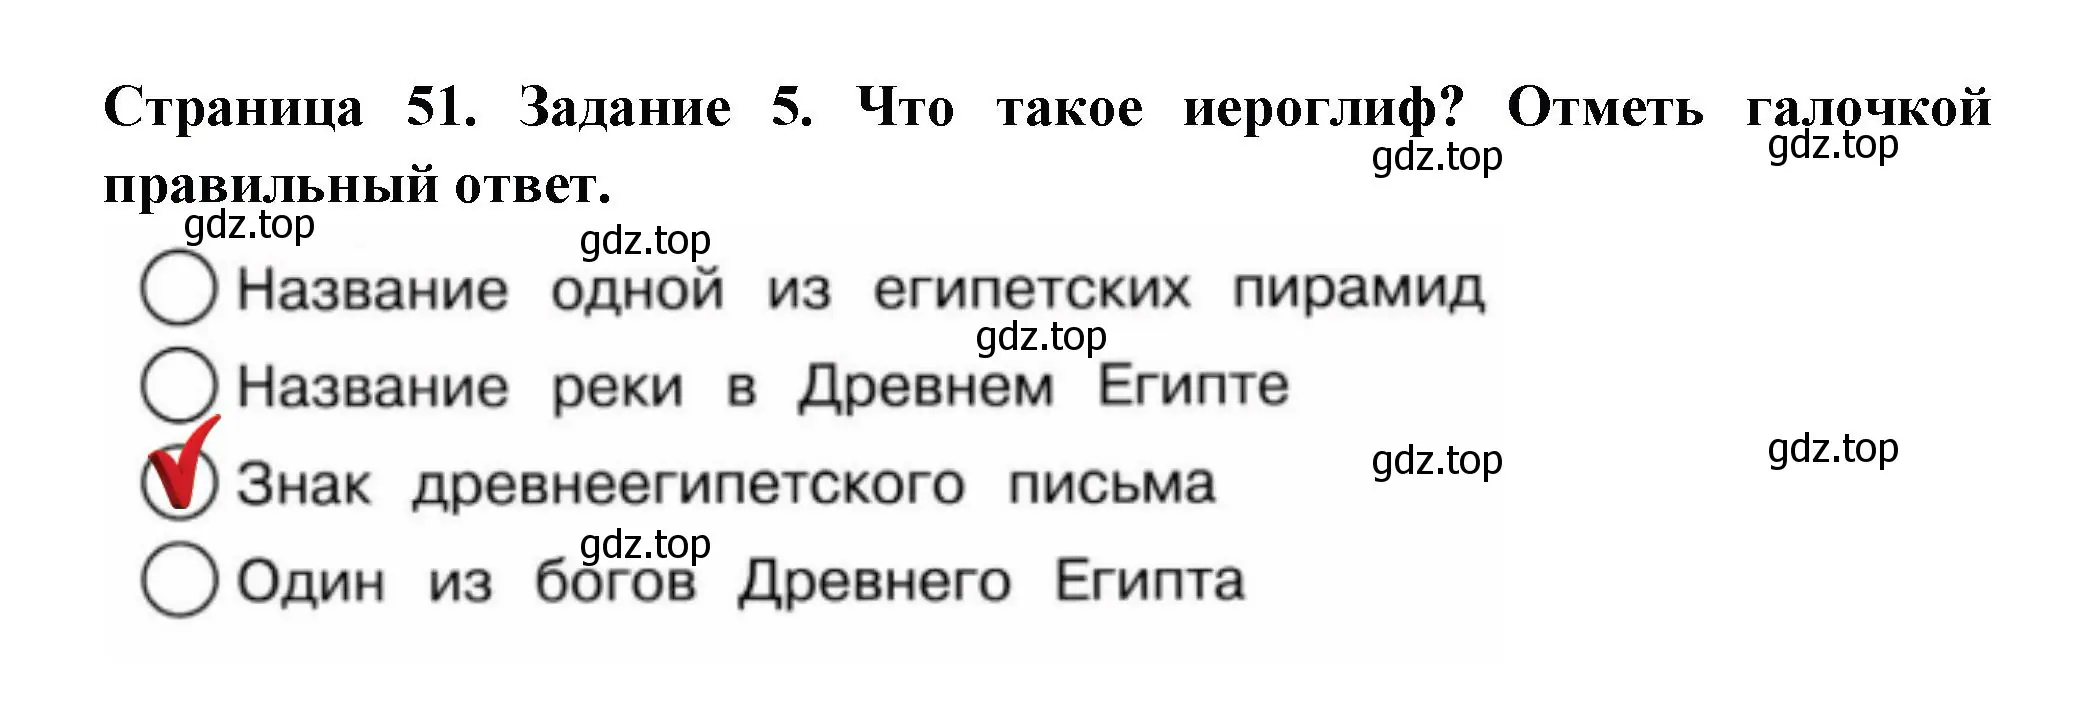 Решение номер 5 (страница 51) гдз по окружающему миру 4 класс Плешаков, Крючкова, проверочные работы